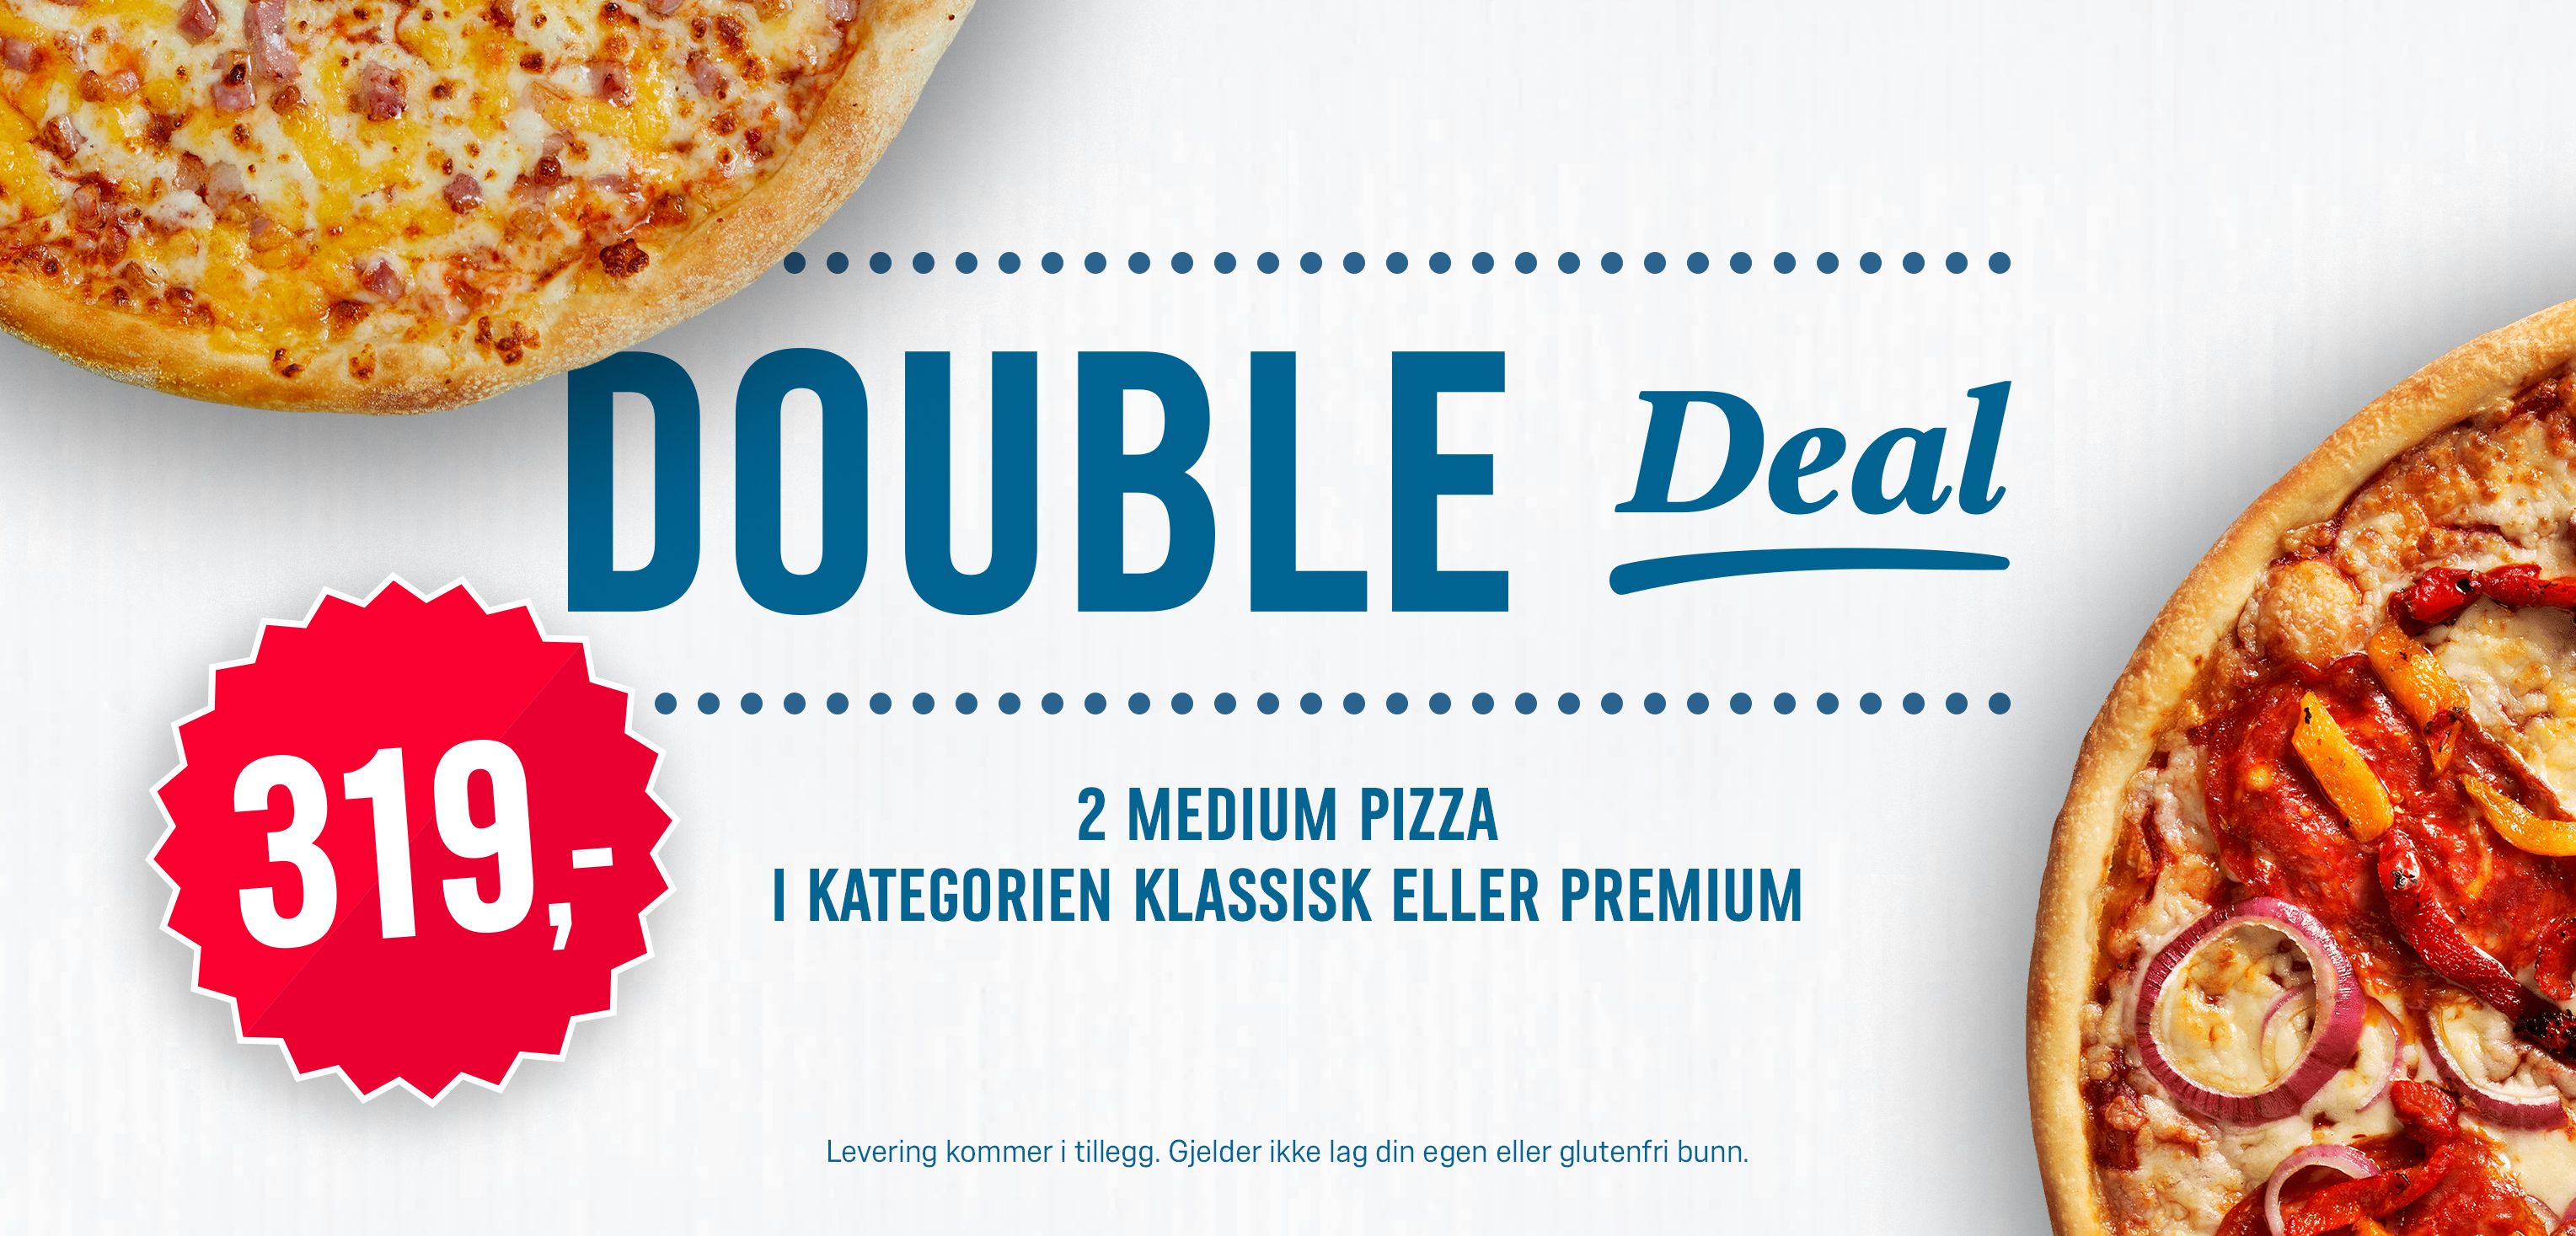 Double Deal - 2 medium pizza i kategorien klassisk eller premium til 319kr. Gjelder ikke glutenfri bunn.